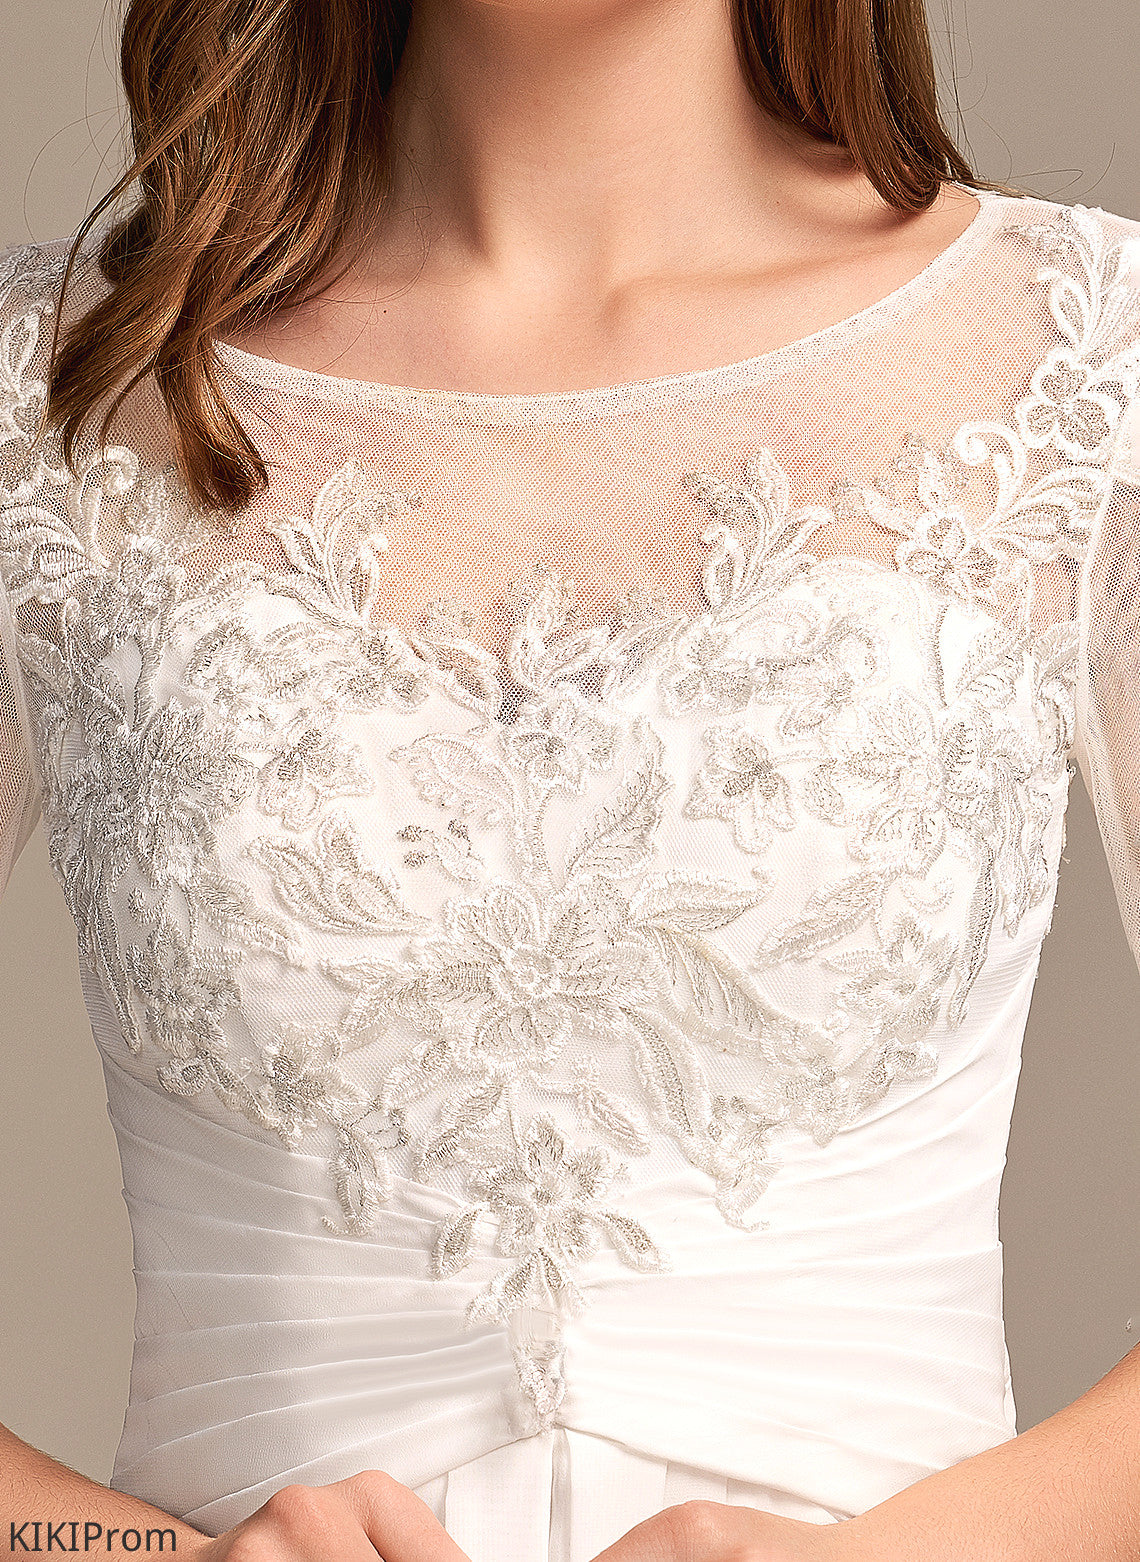 Asymmetrical Chiffon Wedding Dresses With Dress Marilyn Illusion A-Line Wedding Lace